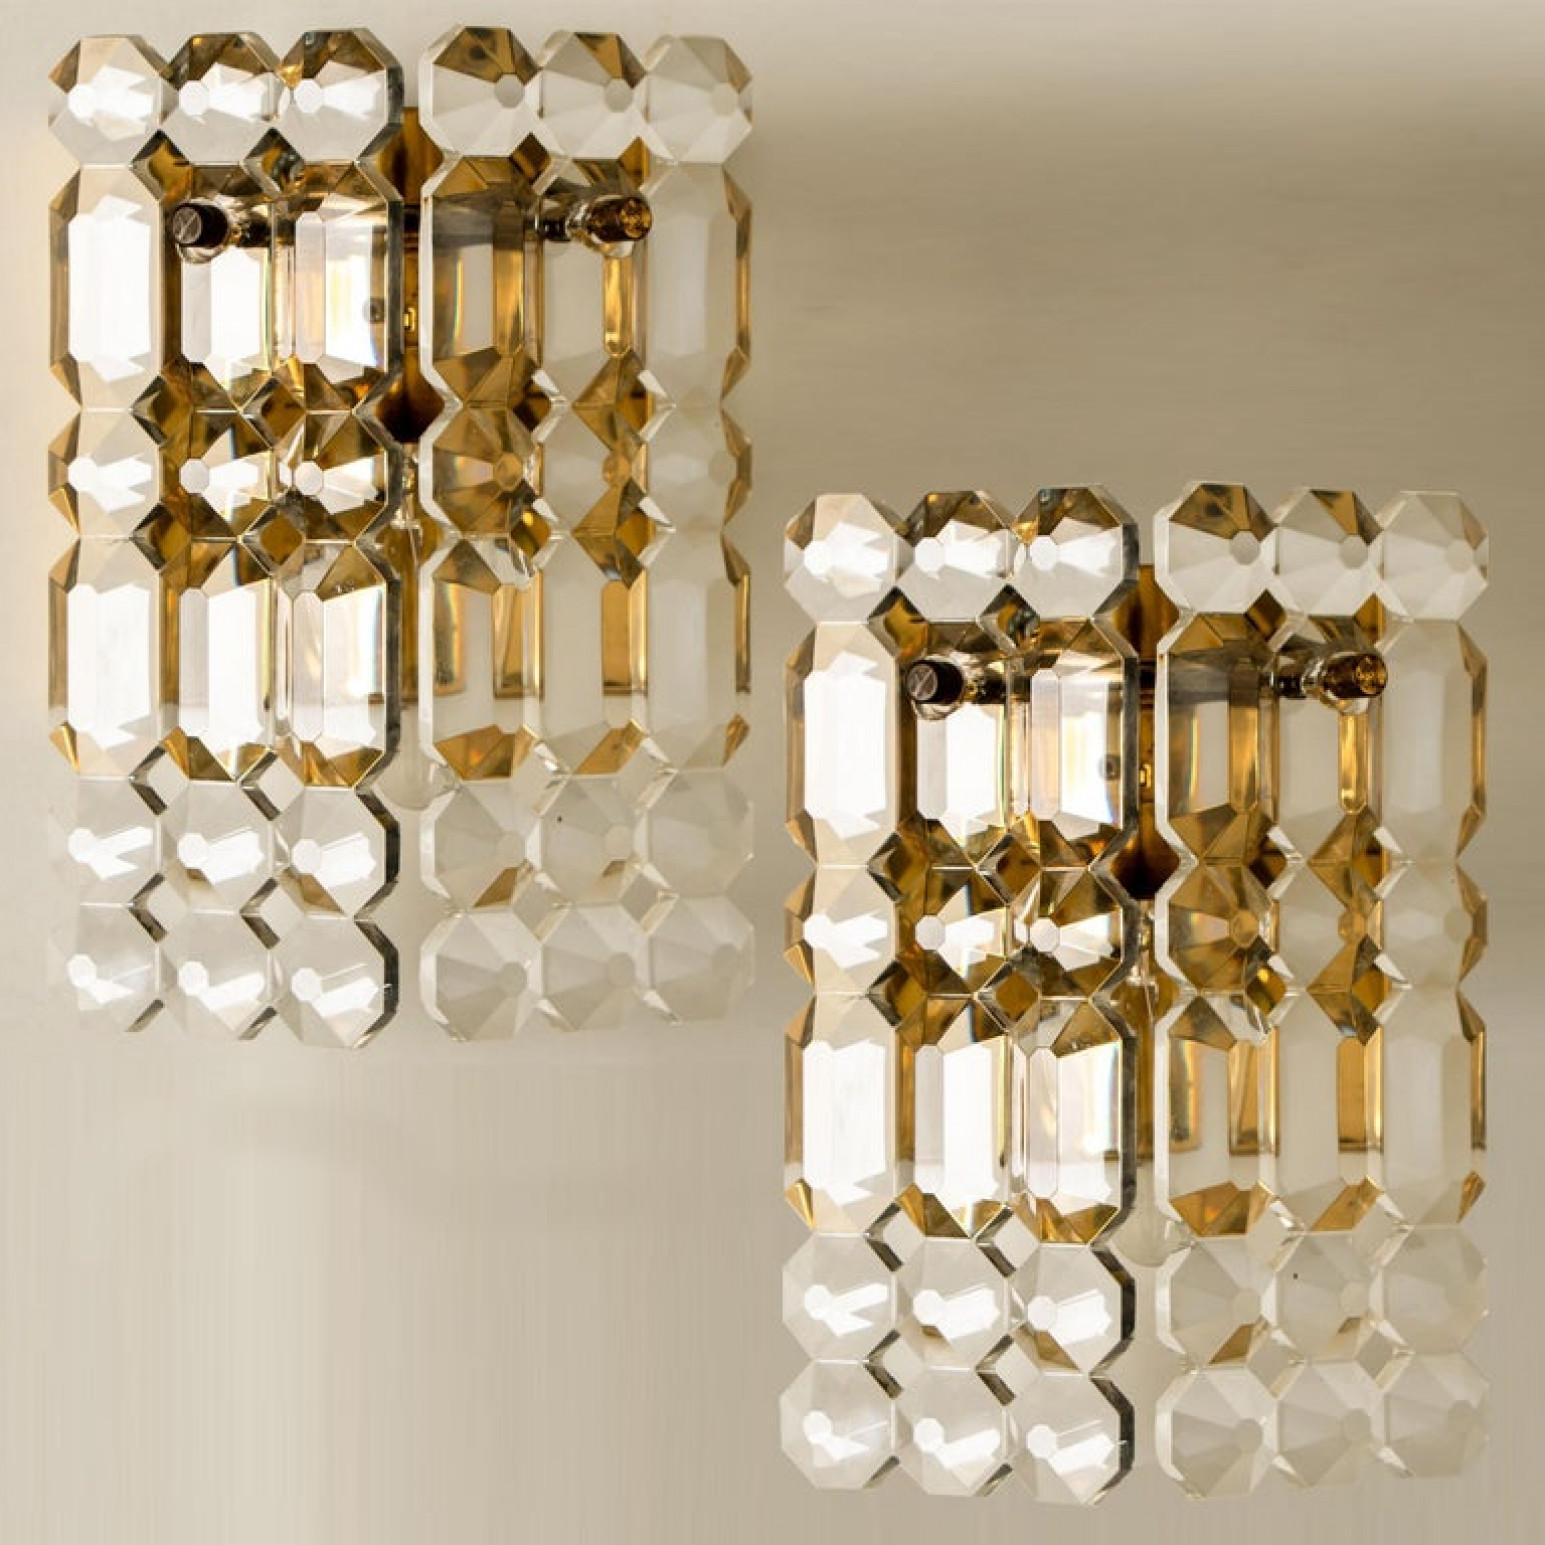 Luxuriöses Paar vergoldeter Rahmen und dicker Kristallleuchter des famosen Herstellers Kinkeldey. Eine Lichtquelle. Sehr elegante Beleuchtungskörper, die zu allen Einrichtungsstilen passen. Die Kristalle sind sorgfältig so geschliffen, dass sie das